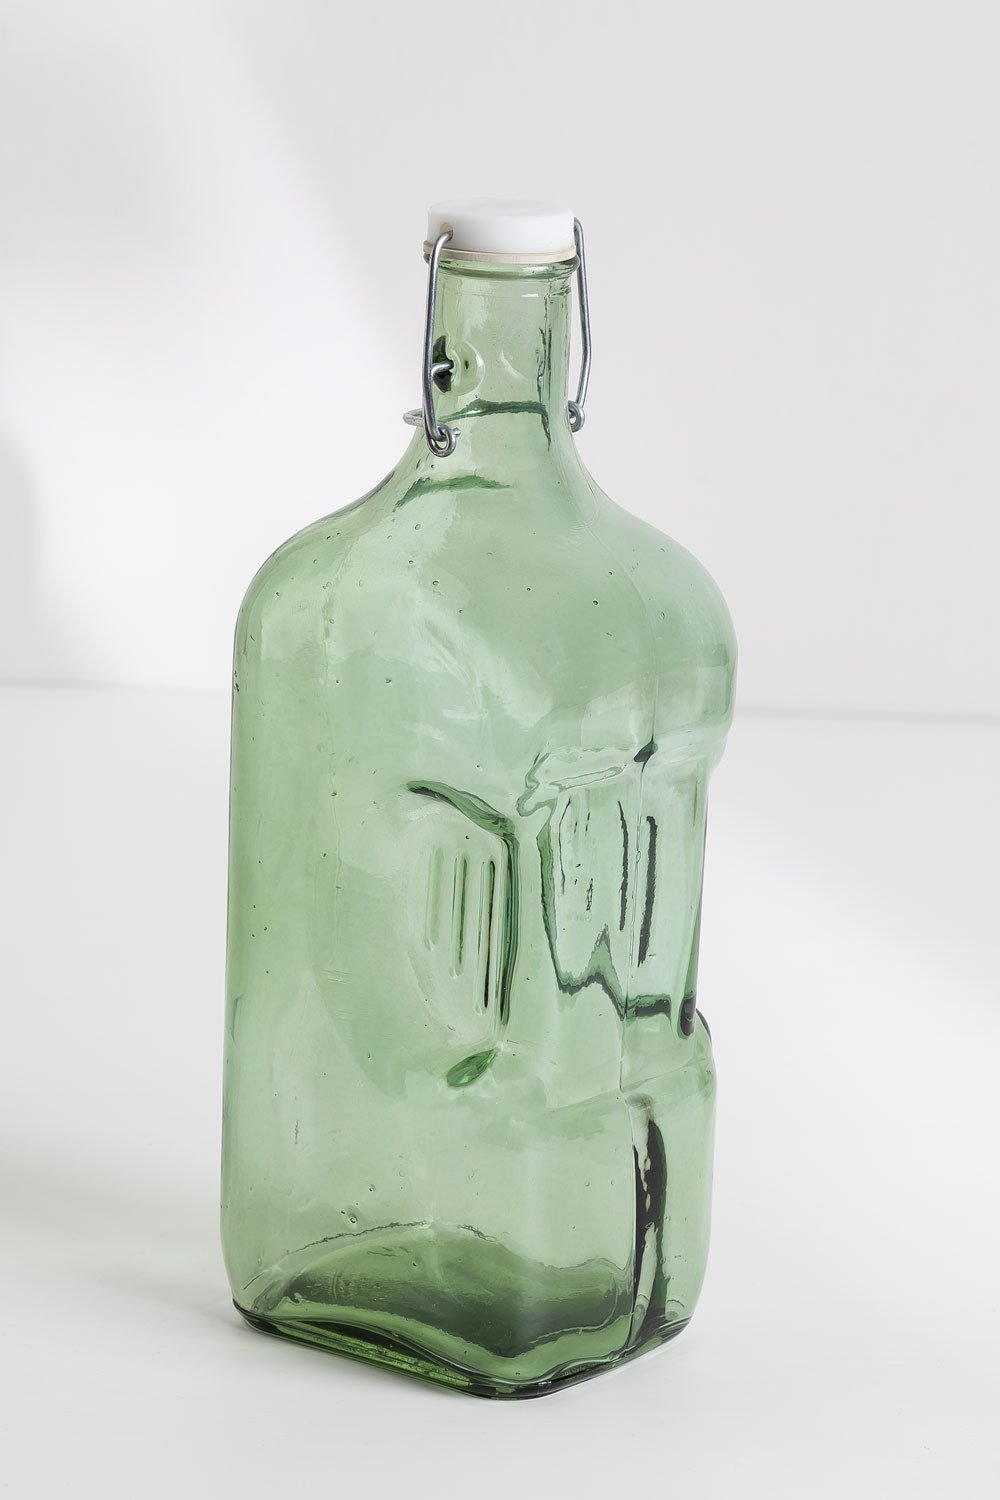 Botella de frigorífico de cristal reciclado de 2l.